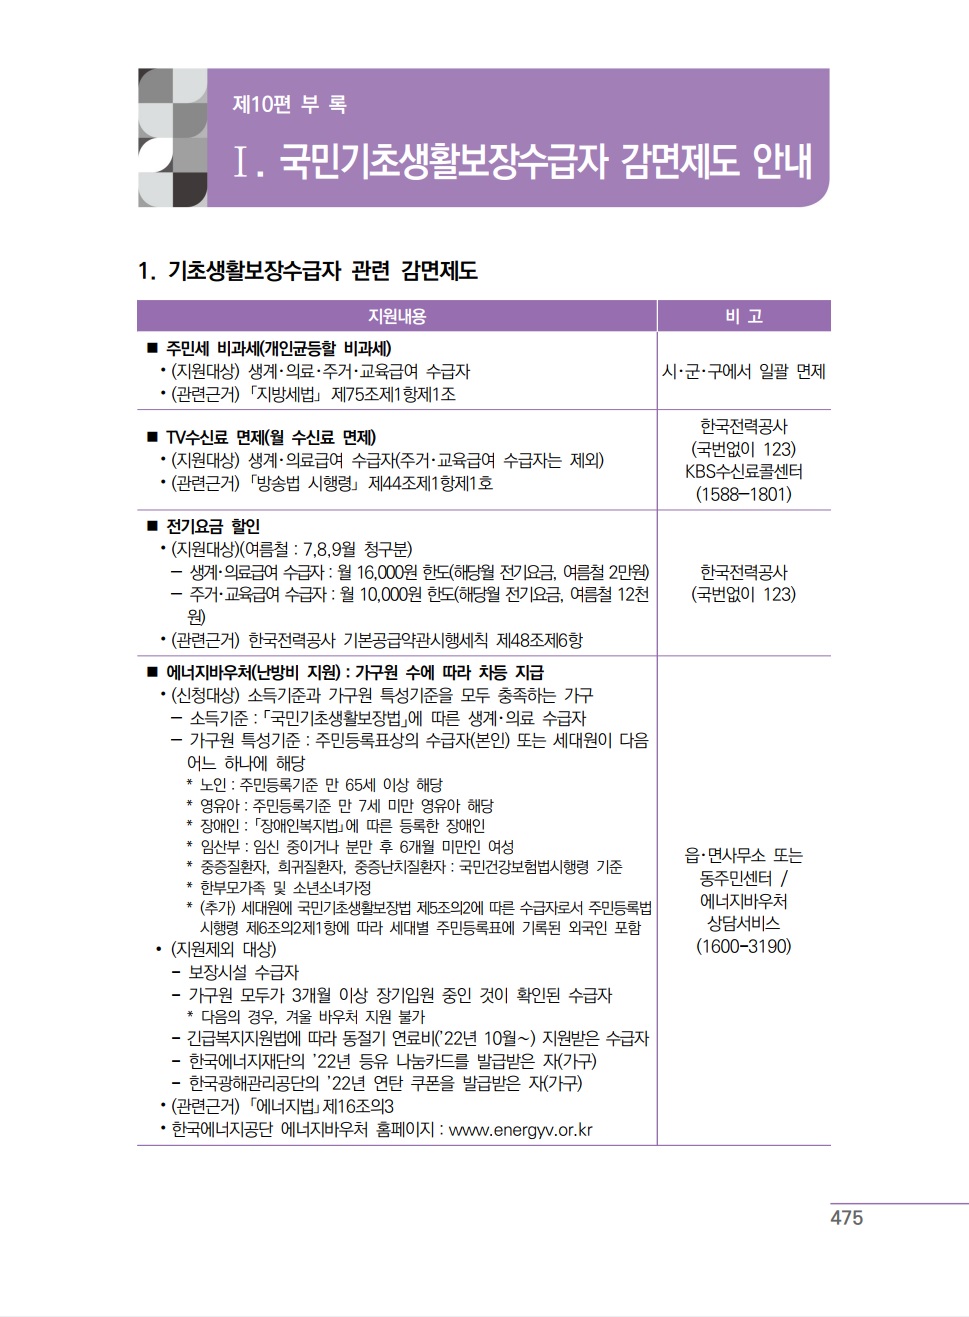 23년 국민기초생활보장 사업안내_수급자 감면제도 안내(475쪽).jpg